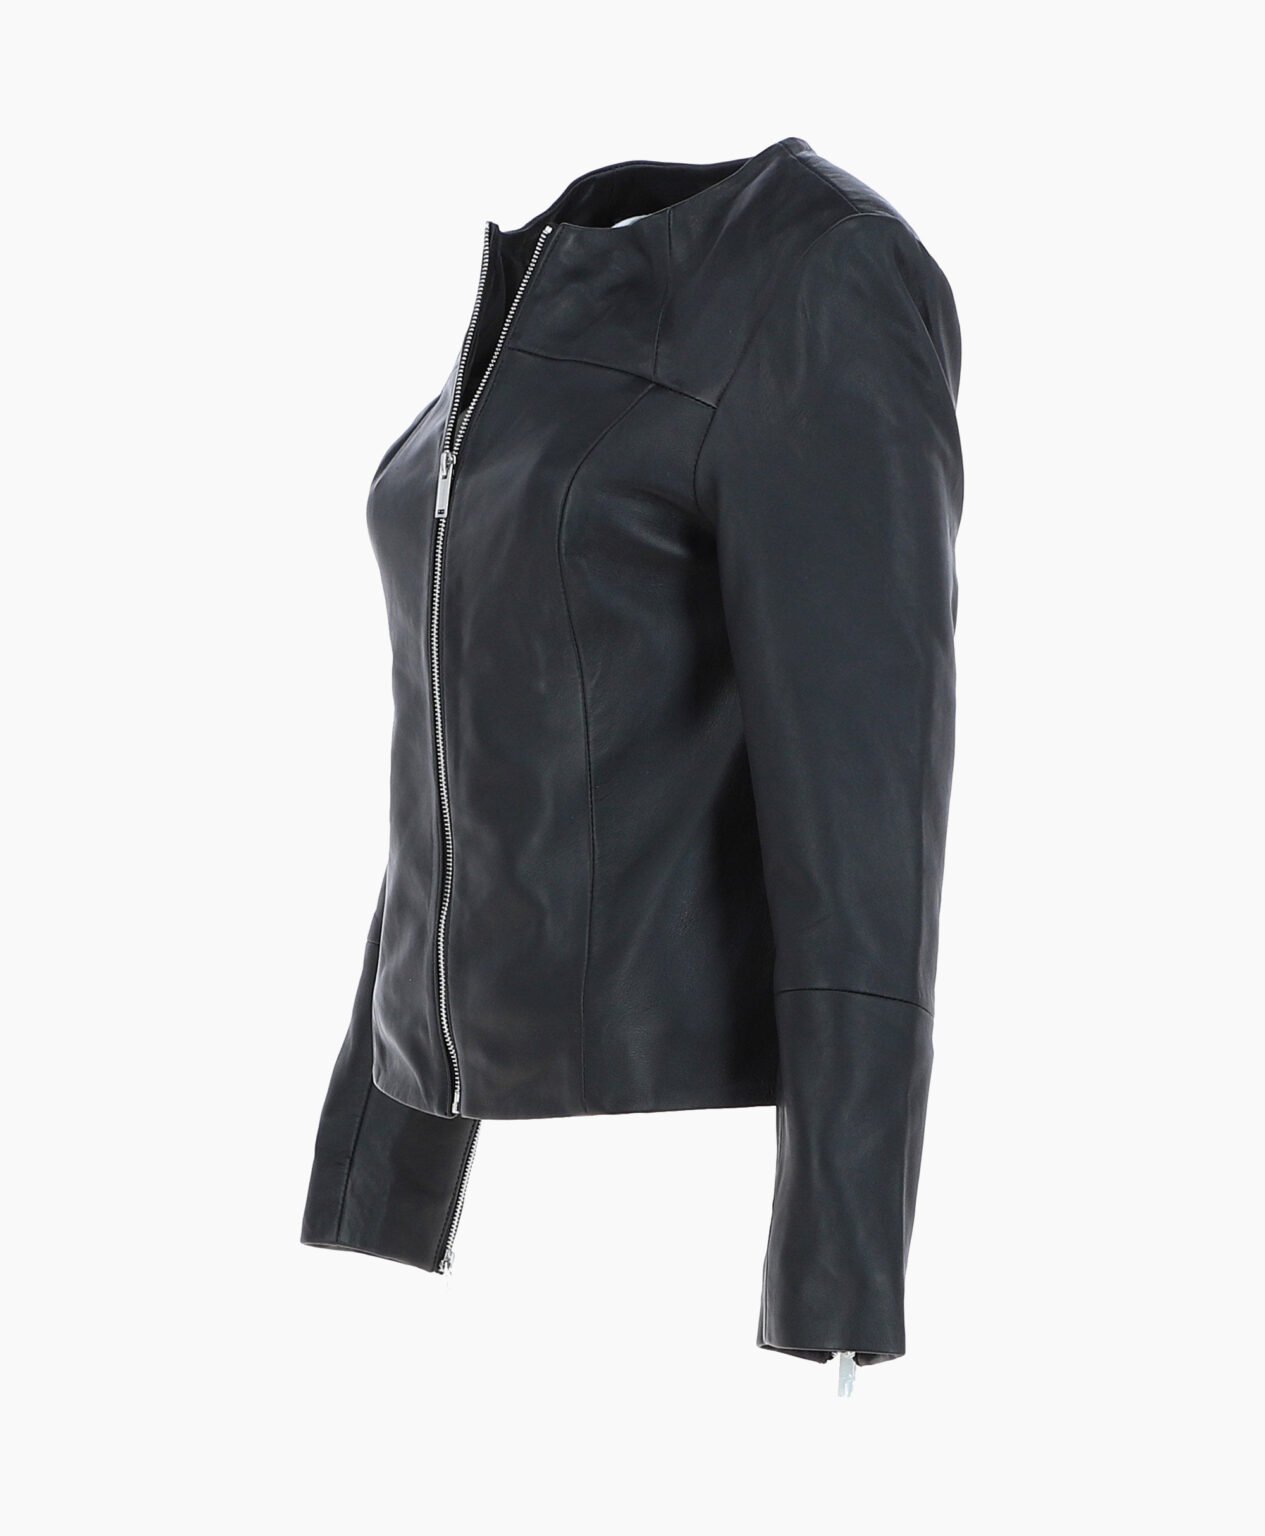 vogue-jacket-leather-fashion-jacket-black-elizabeth-image201